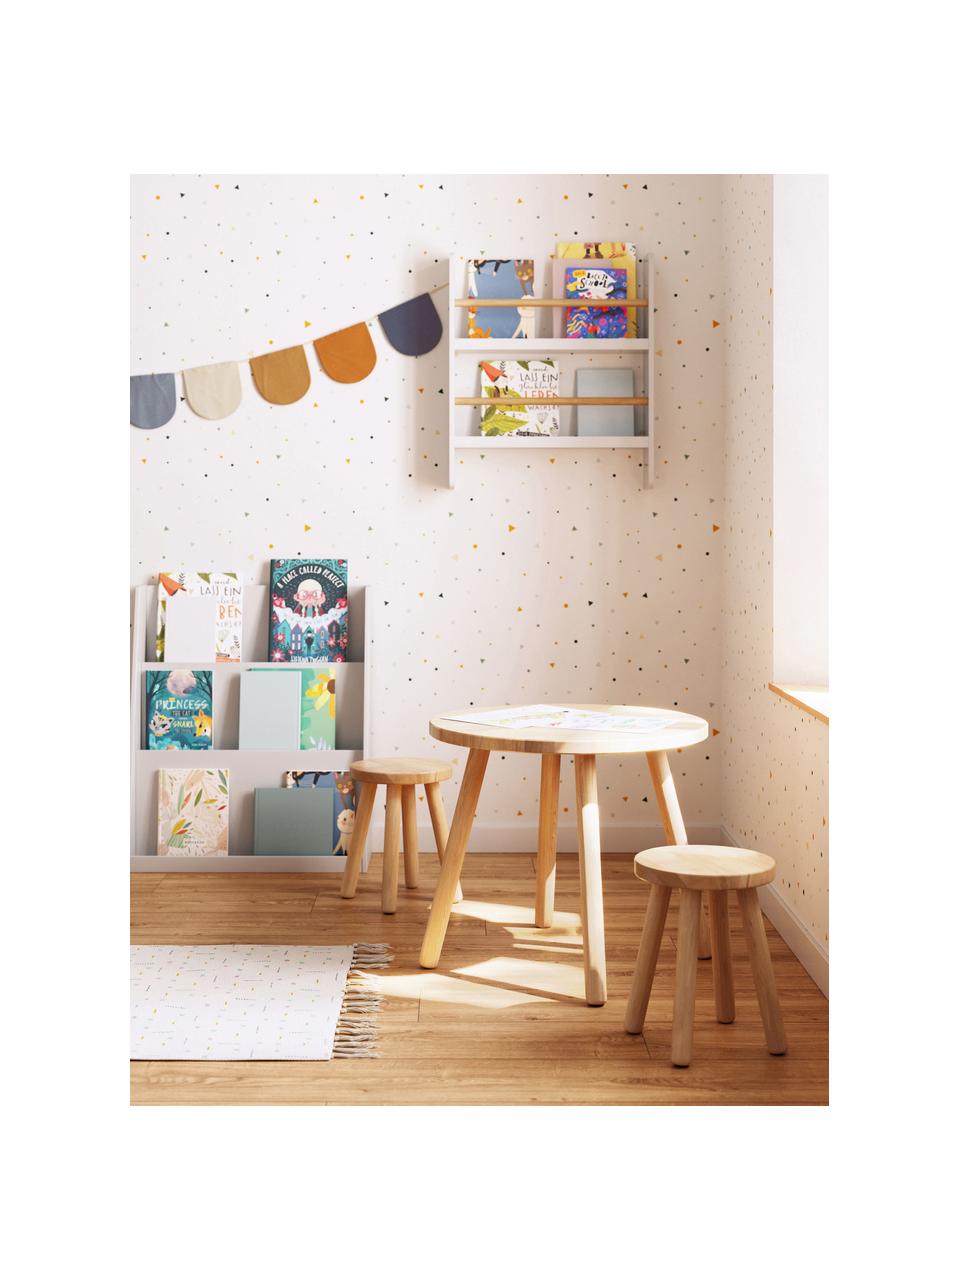 Okrągły stół dla dzieci z drewna kauczukowego Dilcia, Drewno kauczukowe, Drewno kauczukowe, Ø 55 x W 48 cm